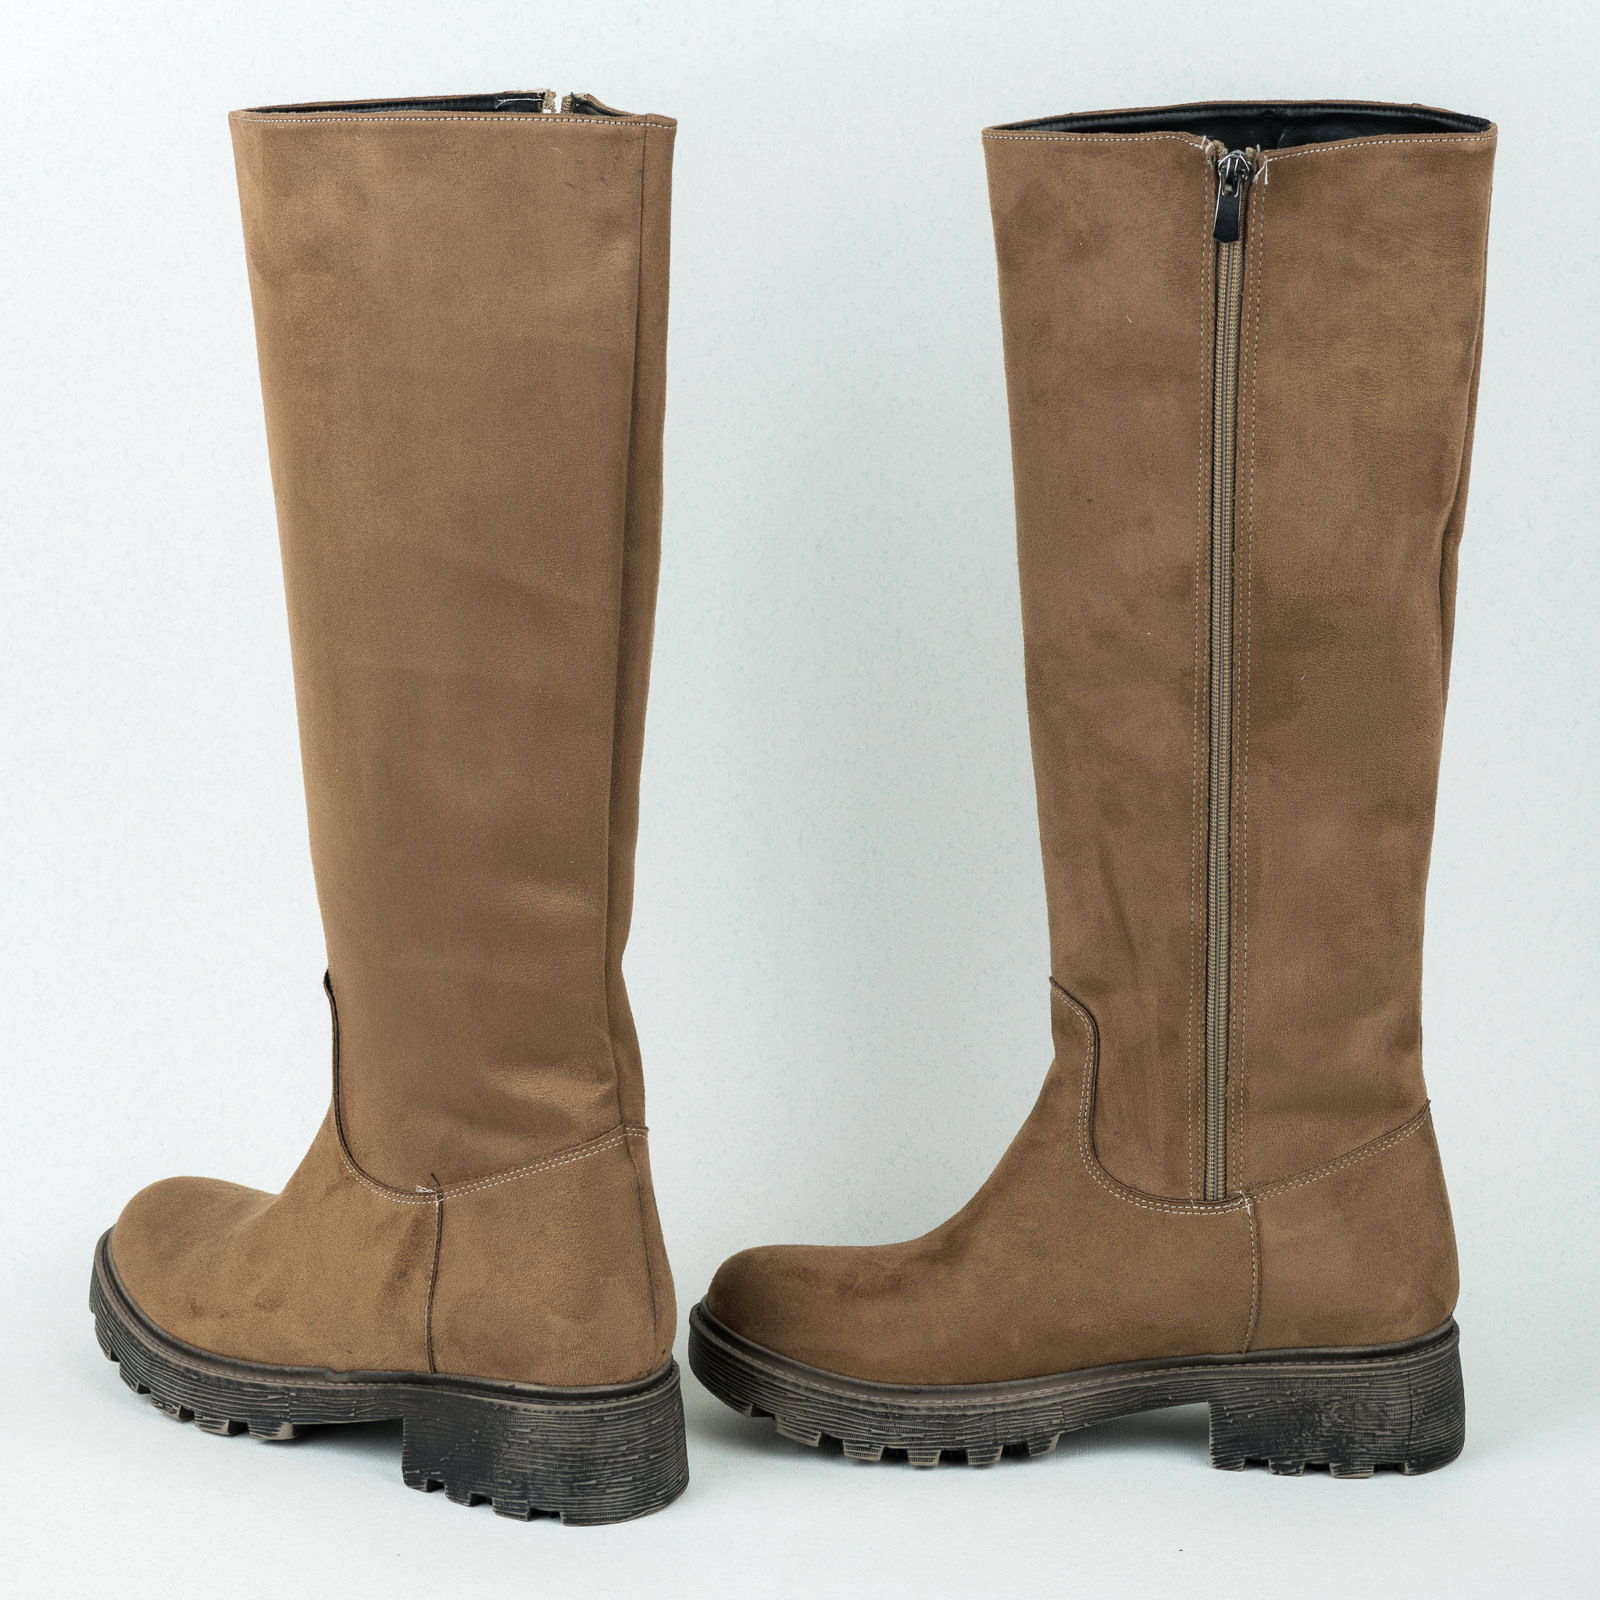 Women boots B371 - BEIGE